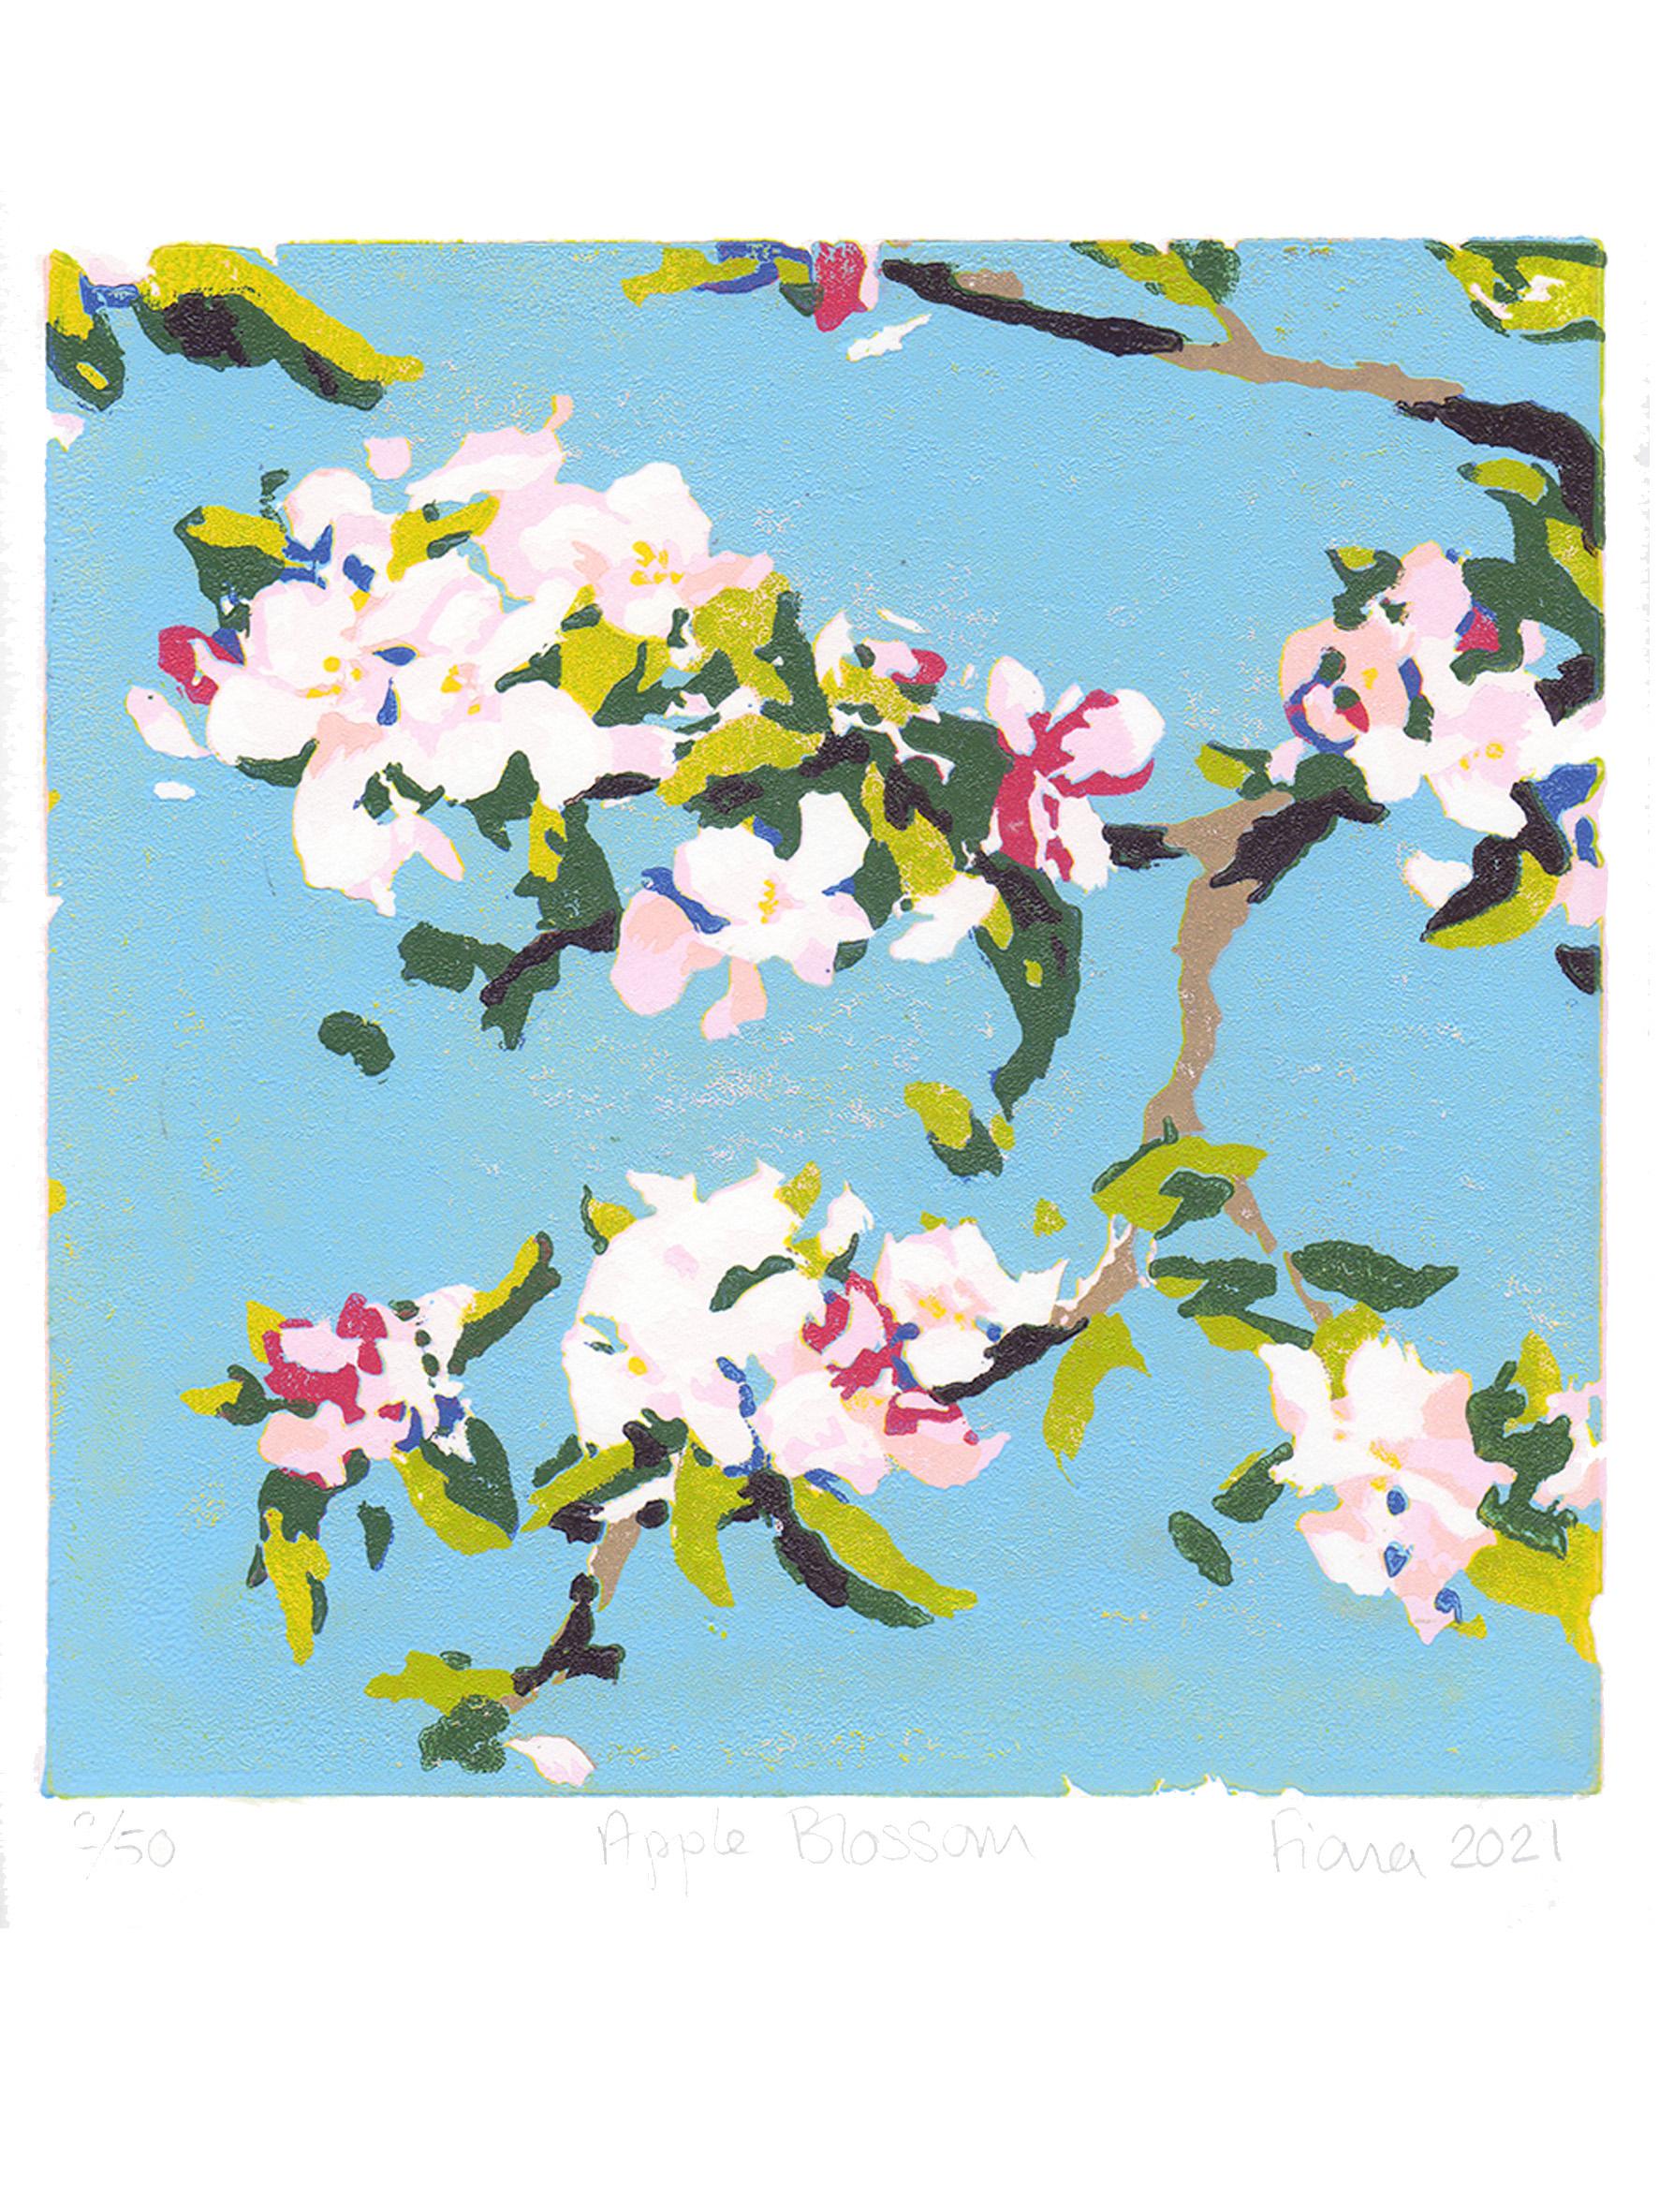 Apfelblüte von Fiona Carver [2021]

Apple Blossom ist ein Original-Linolschnitt in limitierter Auflage von Fiona Carver, inspiriert von der wunderschönen Frühlingsblüte in ihrem Garten. Es handelt sich um einen Verkleinerungsdruck, d. h., nach dem